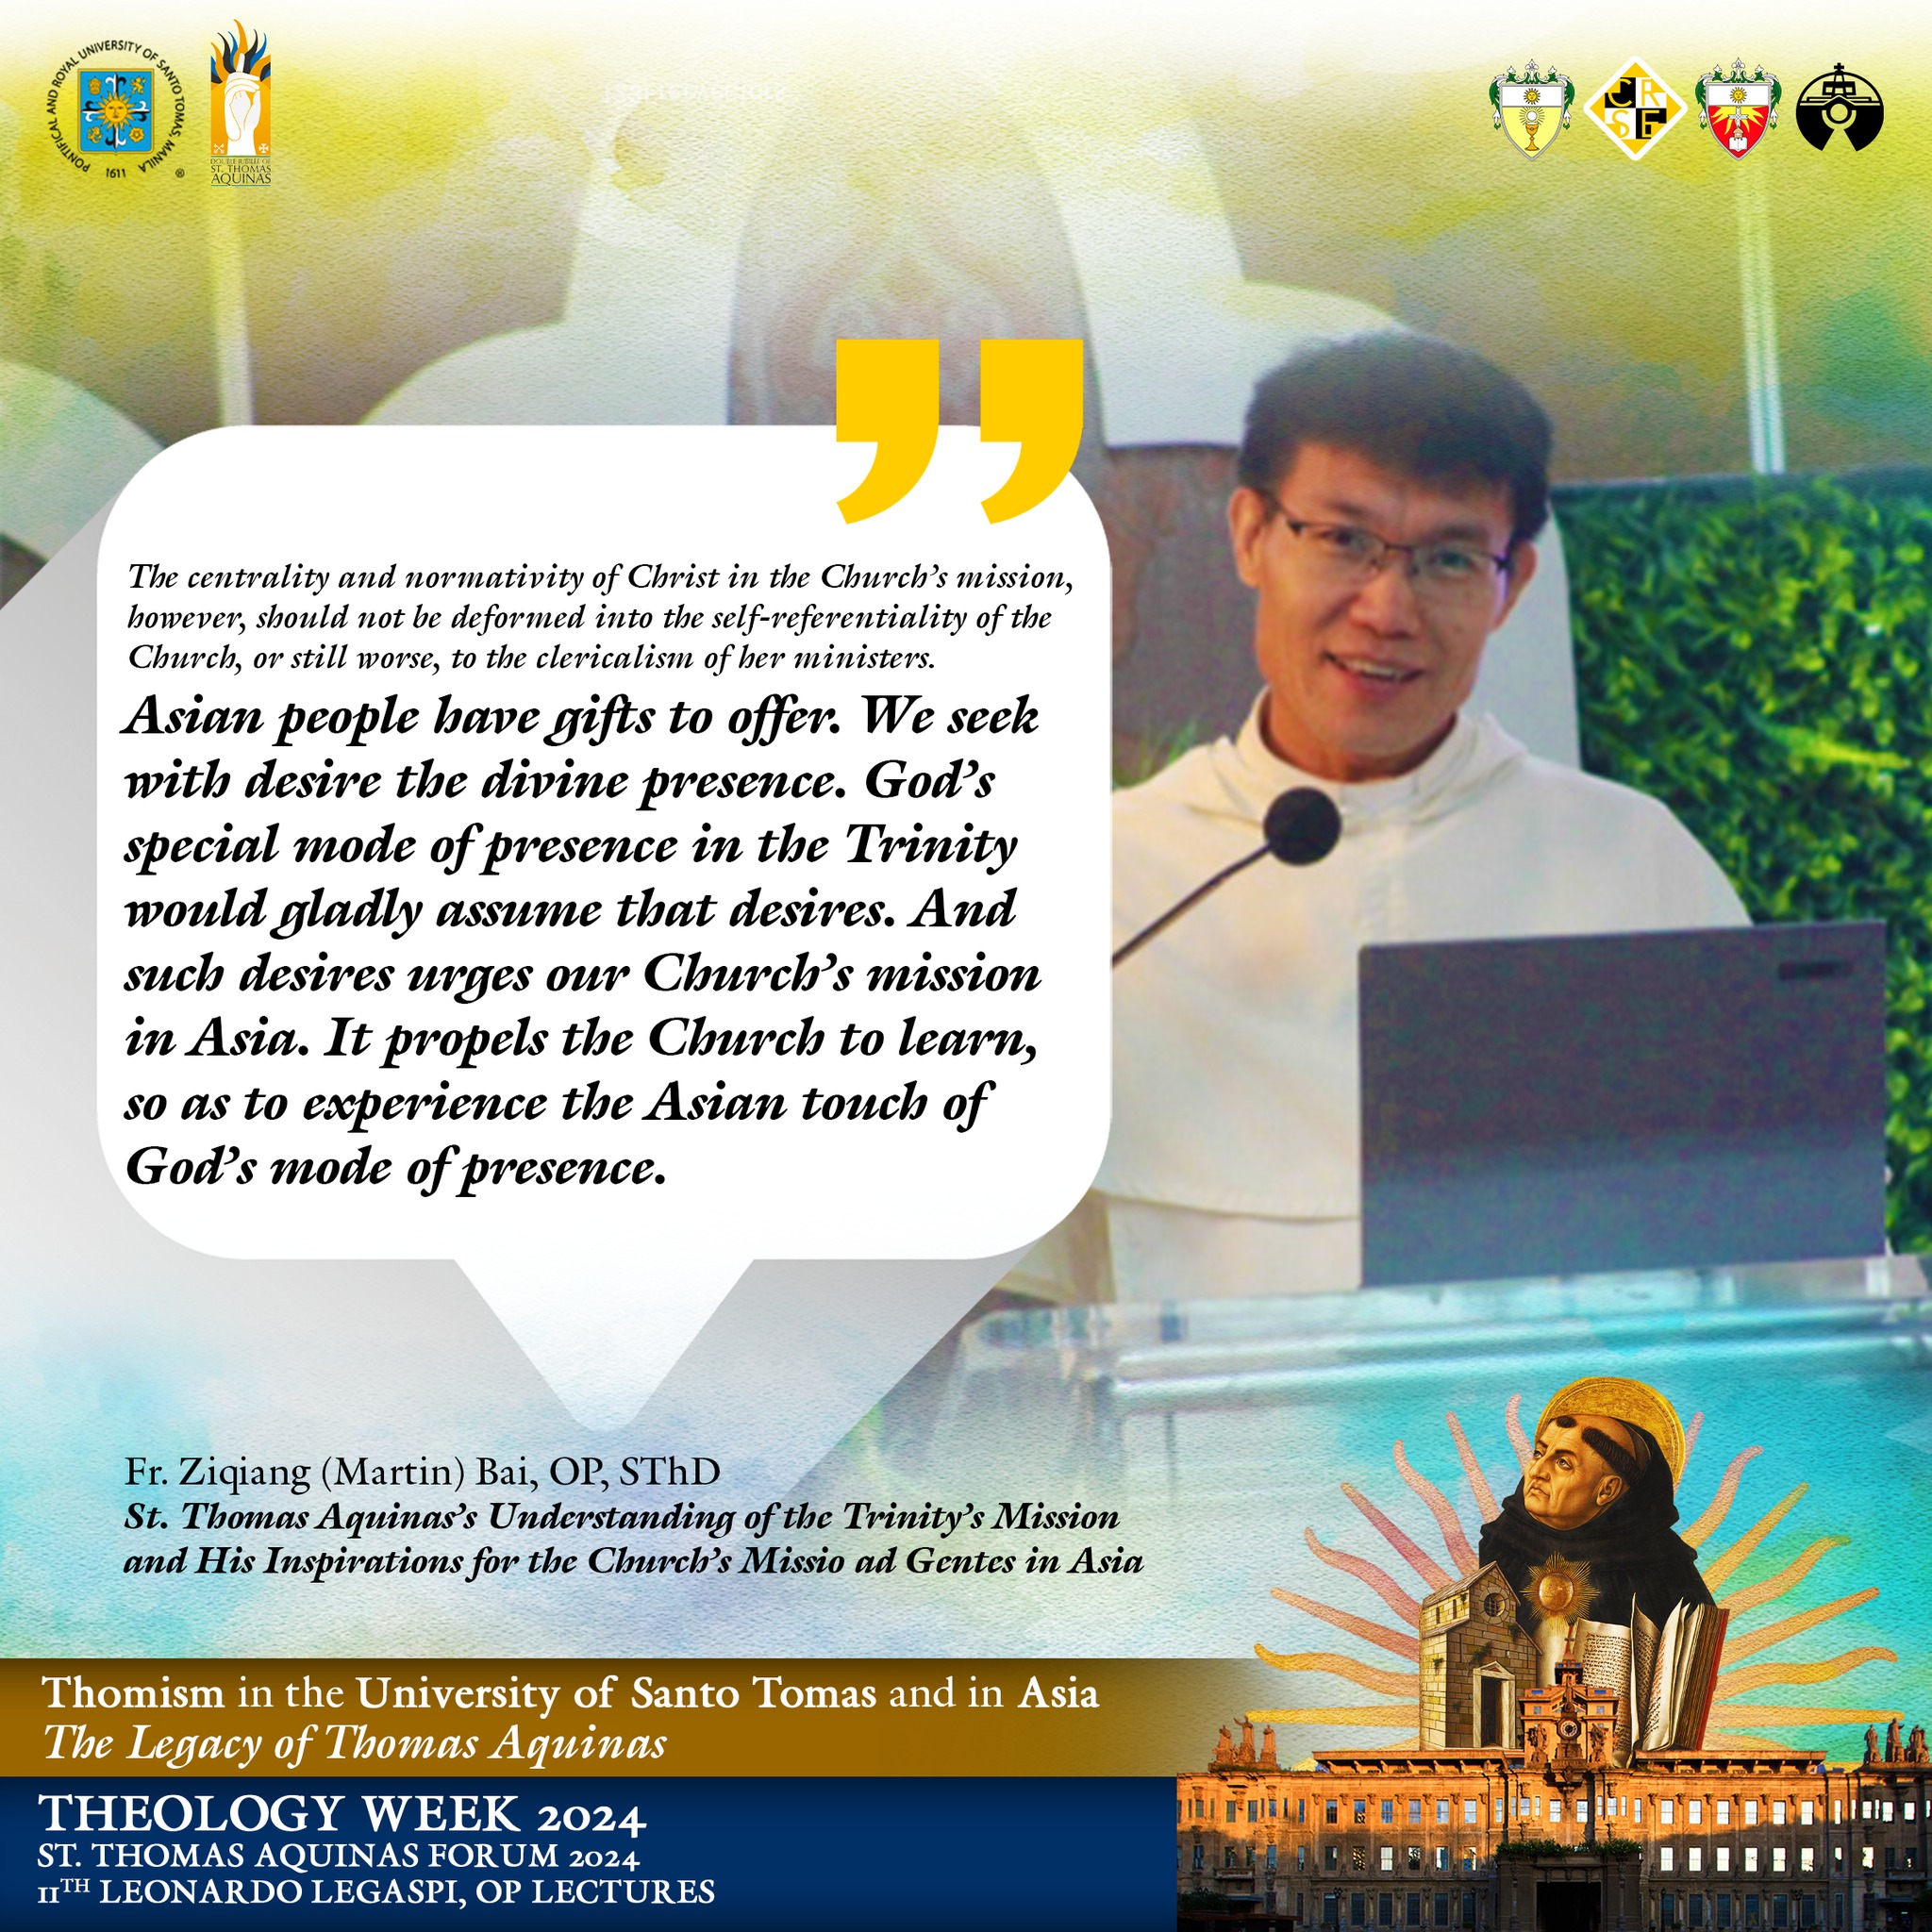 Theology Week 2024 in Manila